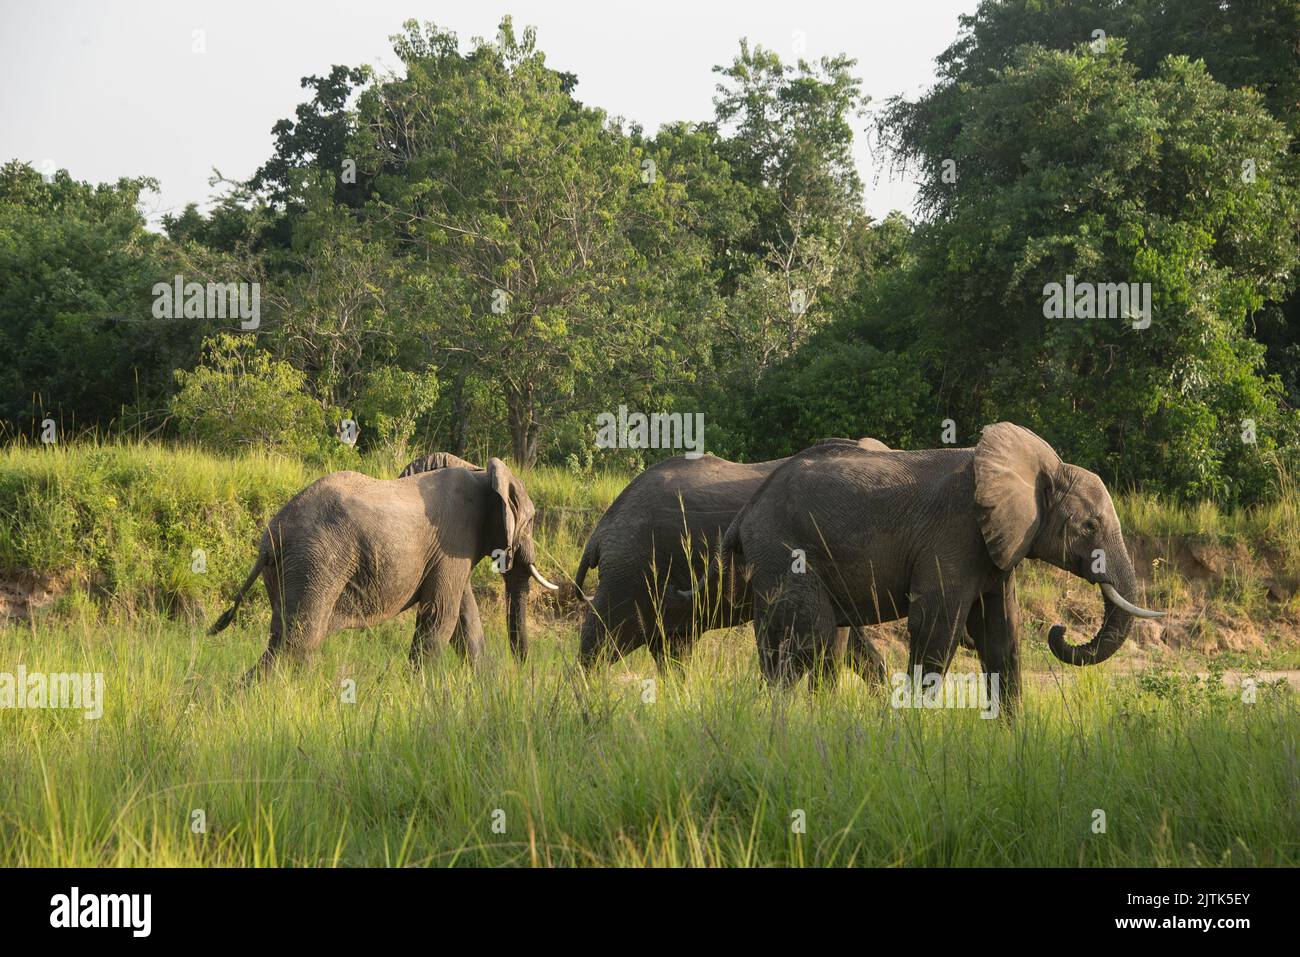 Groupe d'éléphants d'Afrique marchant le long du lit de rivière sec dans le parc national de Murchison Falls, Ouganda. Banque D'Images